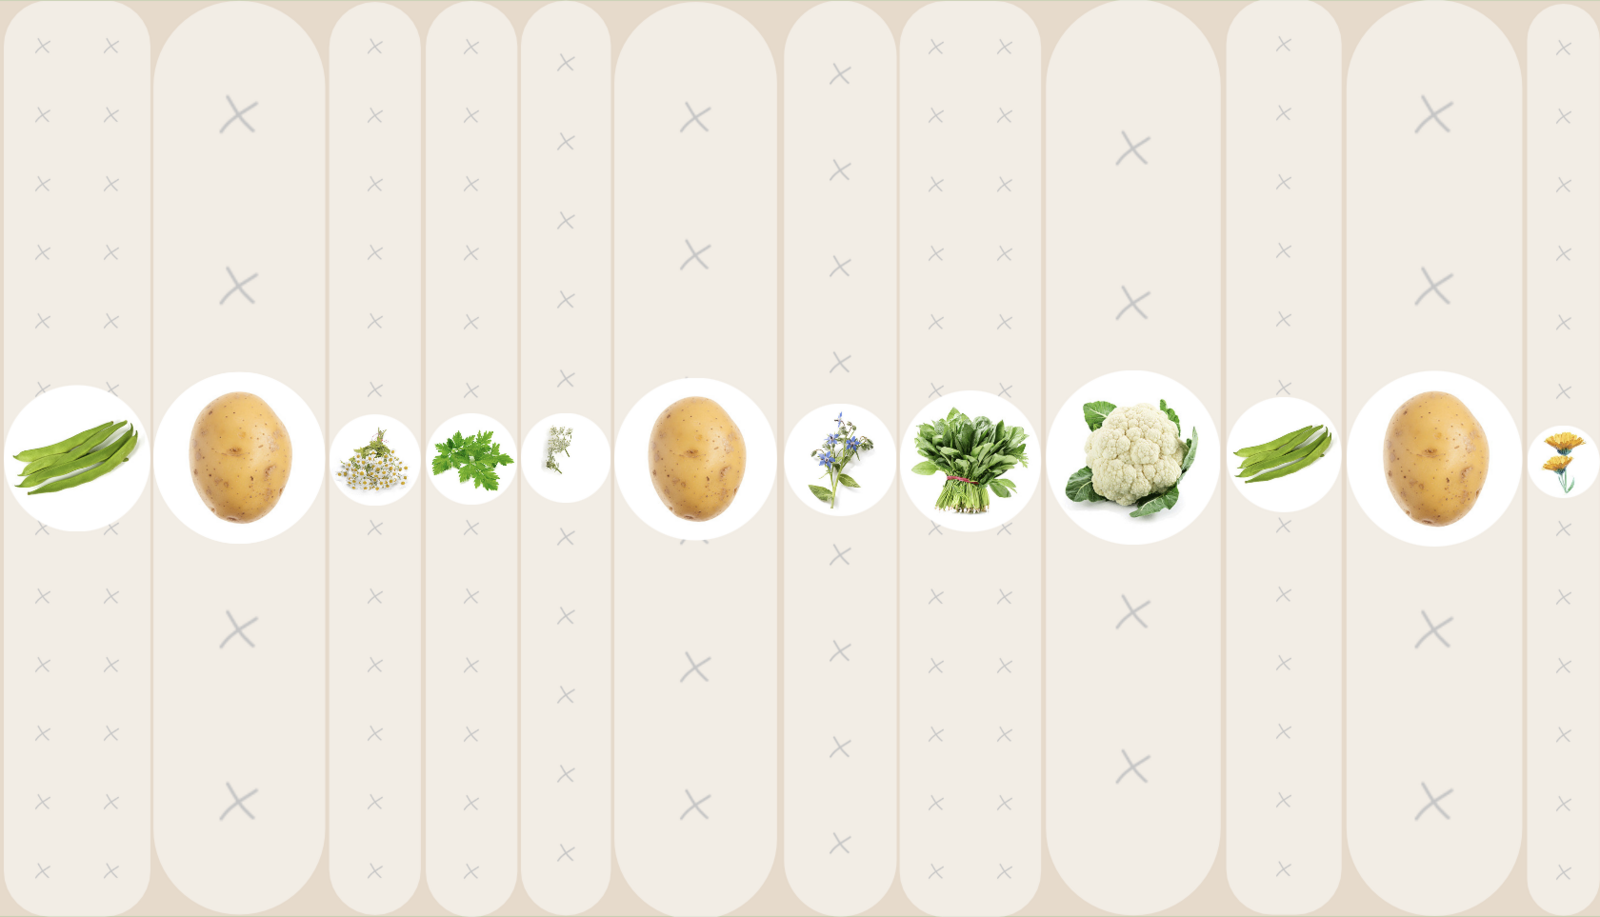 Mischkultur mit Kartoffel, Bohne, Kümmel, Kamille, Petersilie, Borretsch, Spinat und Kohl